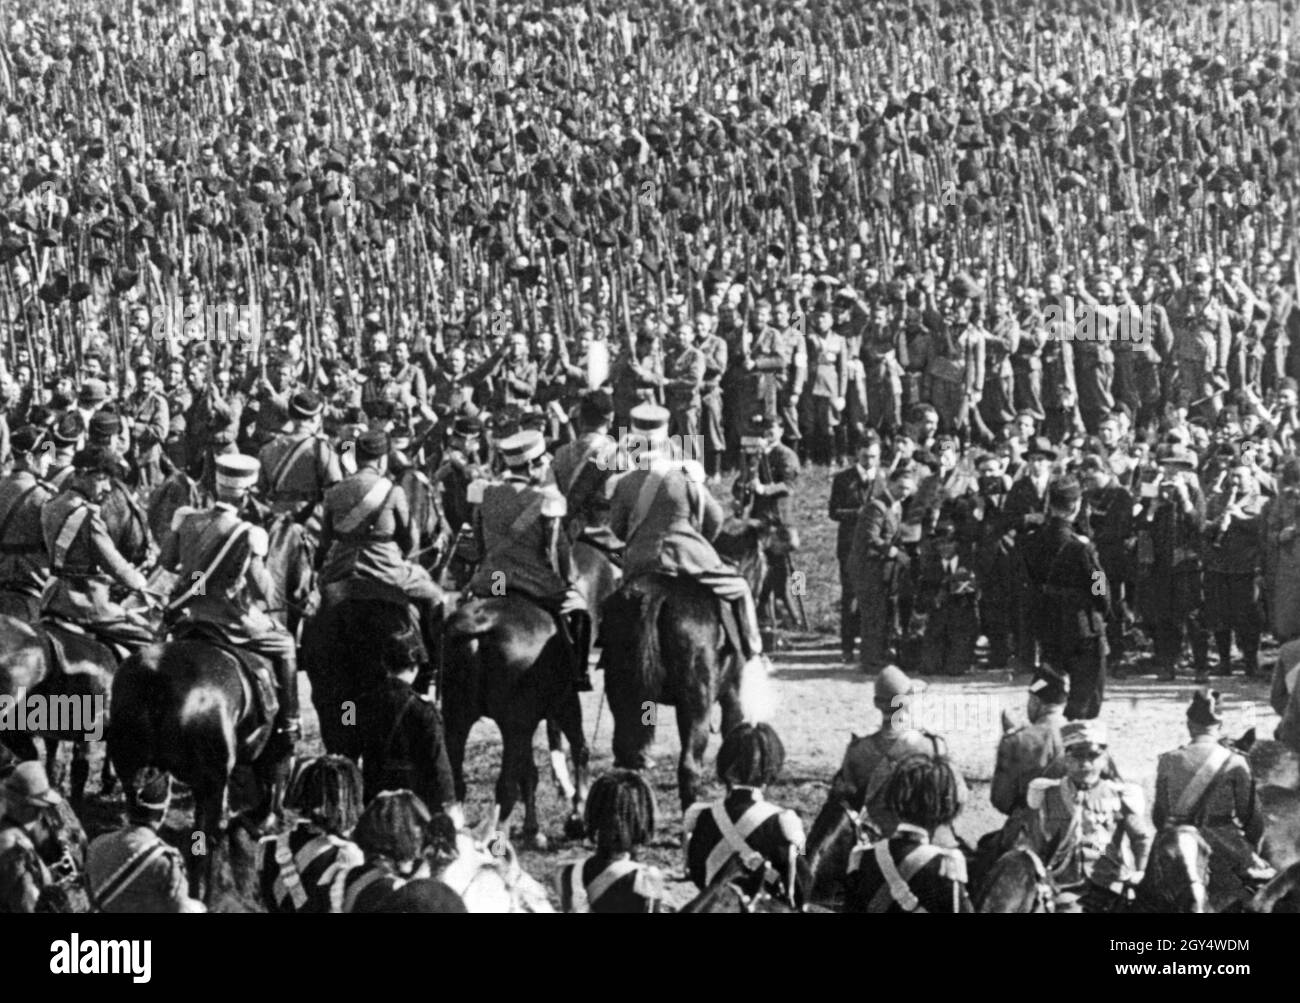 Benito Mussolini (Mitte, Hut mit Hut) sprach im Herbst 1927 im Park der Villa Glori in Rom Soldaten der italienischen Armee an. Anlass war die Feier des 5. Jahrestages des Faschismus (nach dem marsch nach Rom im Oktober 1922). Auf der rechten Seite sind ein Filmteam und die Pressefotografen zu sehen. Die Aufnahme stammt aus einem Bild in einer Ufa-Wochenschau. [Automatisierte Übersetzung] Stockfoto